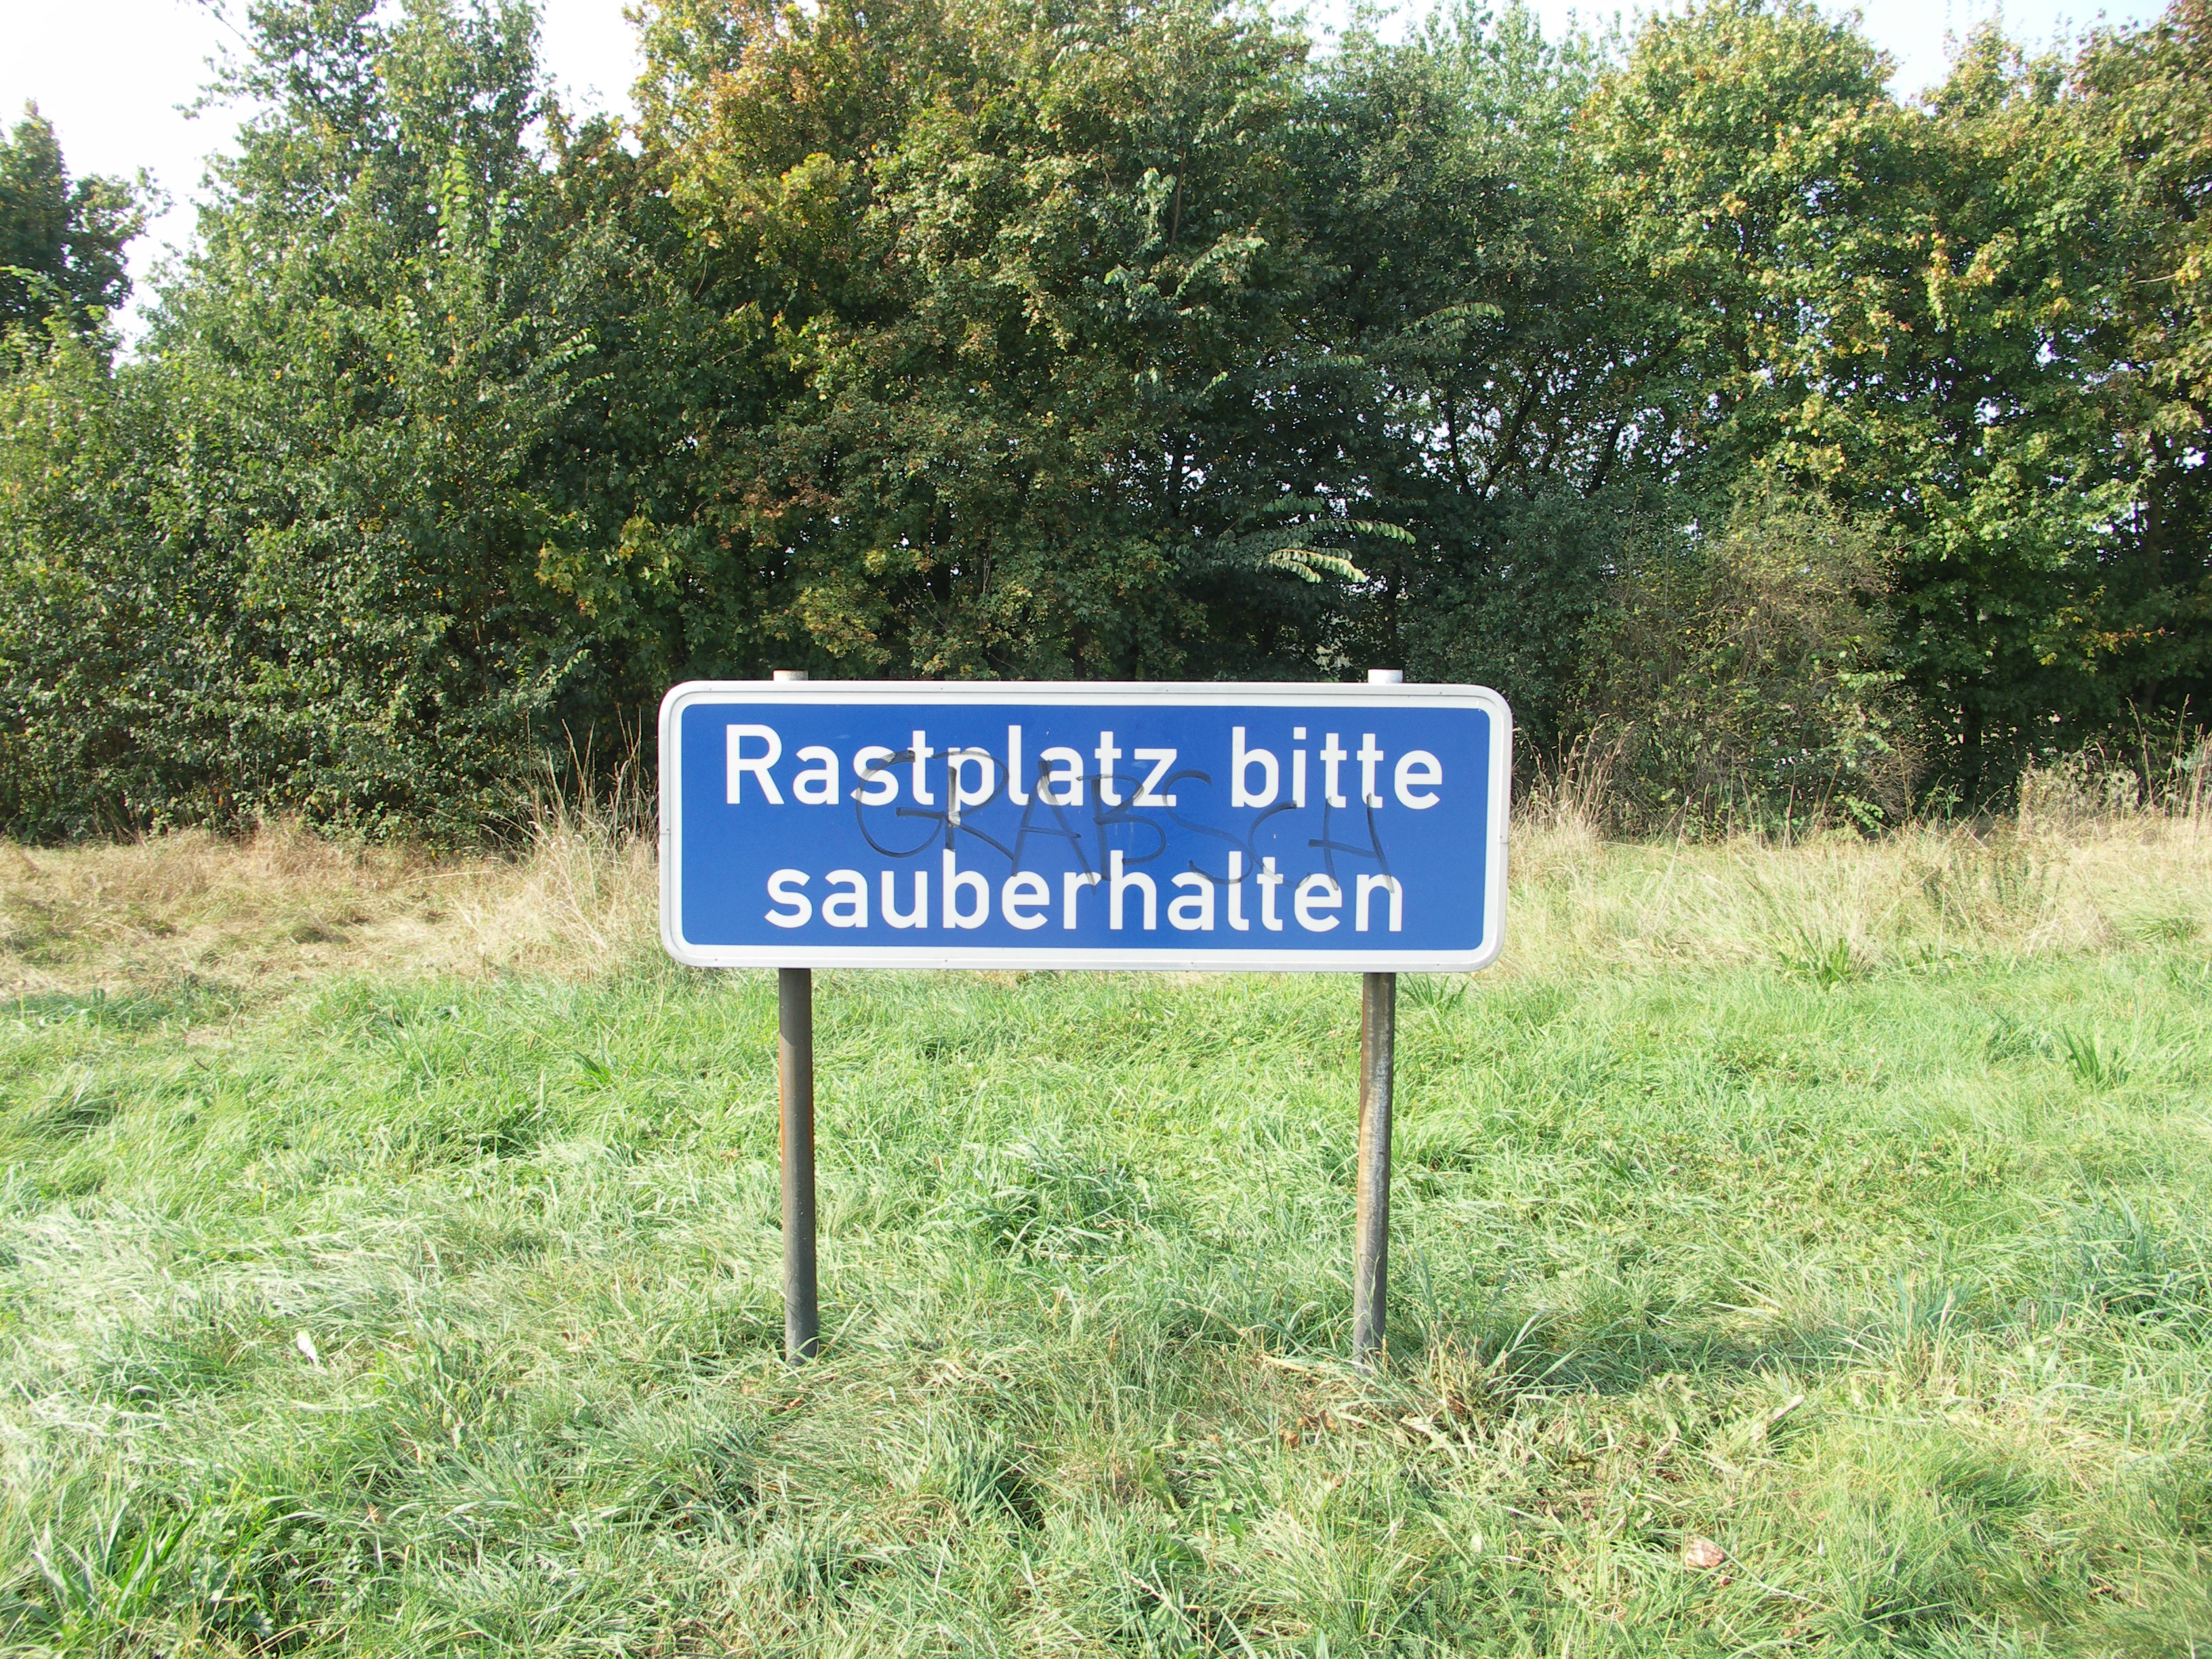 Rastplatz